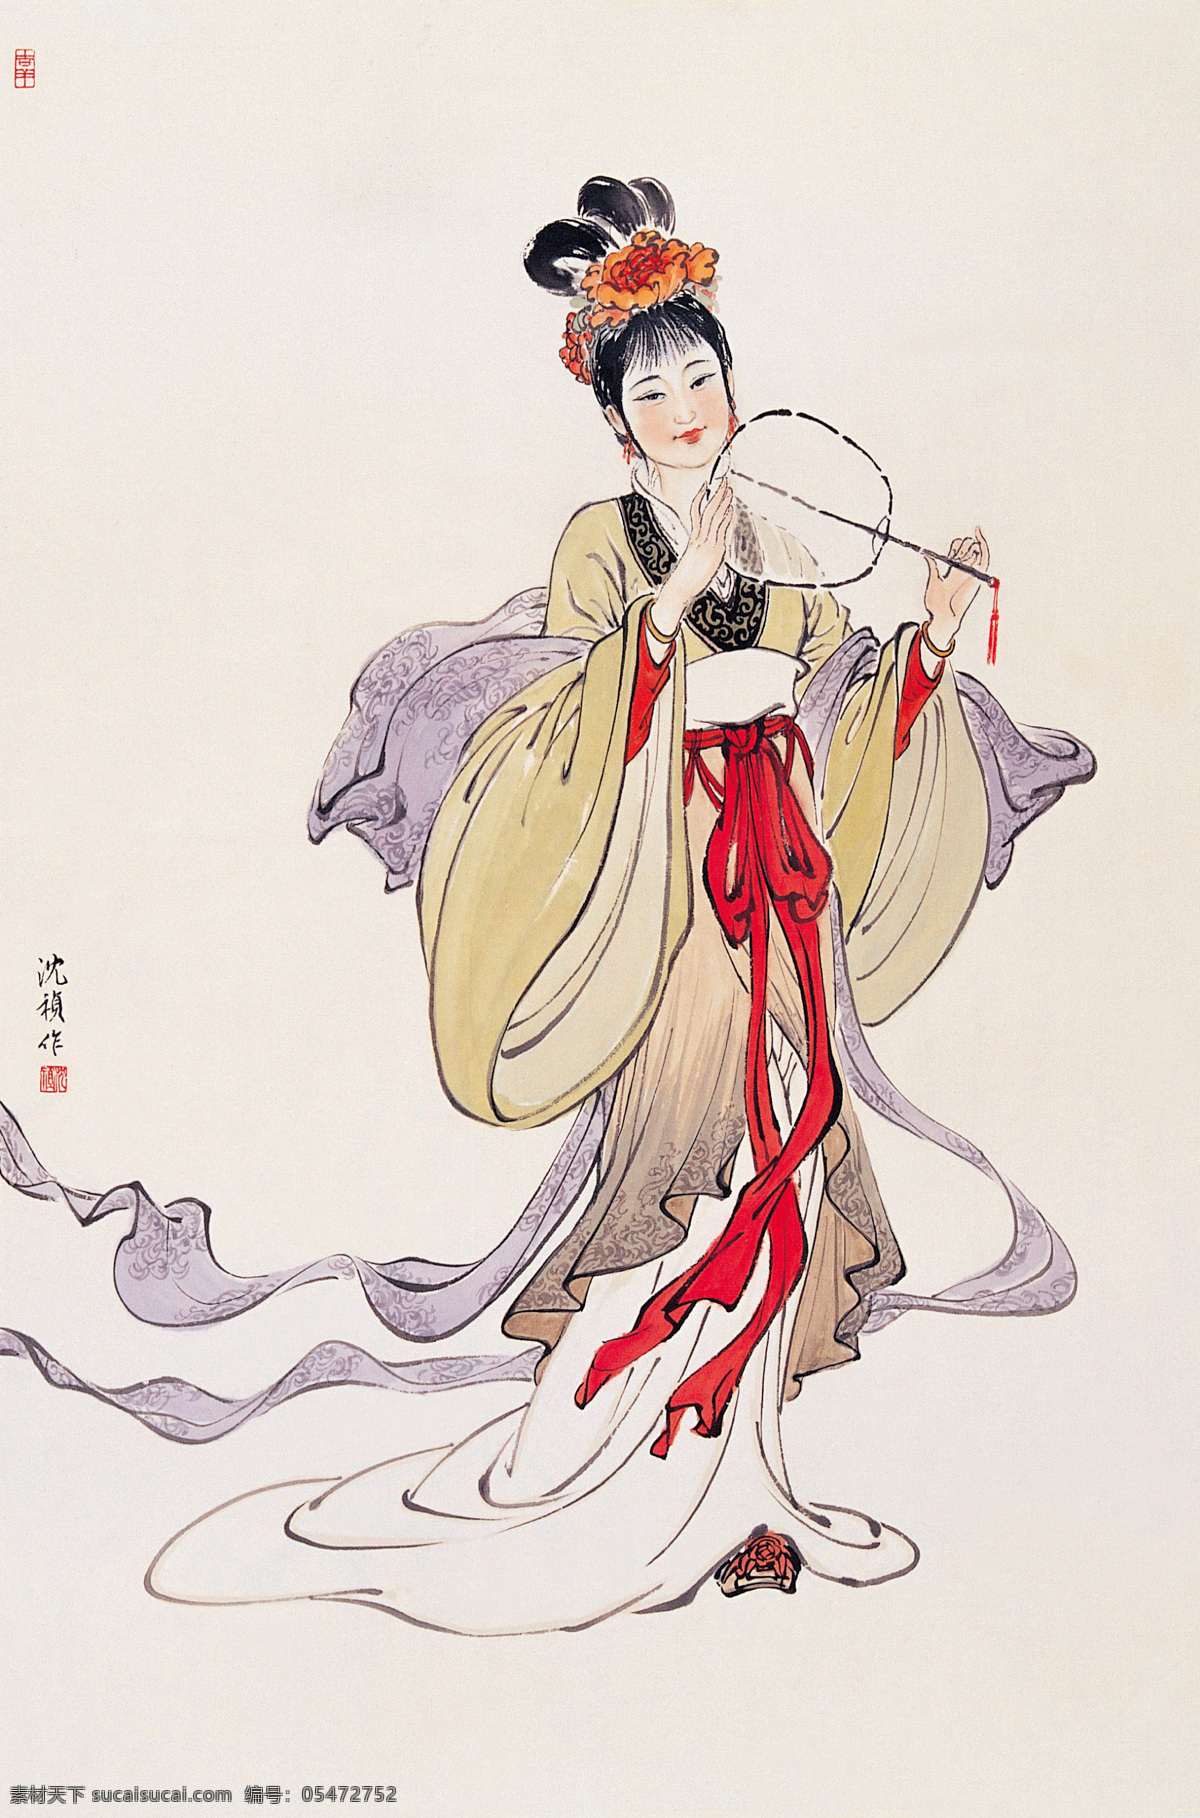 执扇仕女 国画 写意 图案 绘画 古典 神话传说 人物 中国风 绘画书法 文化艺术